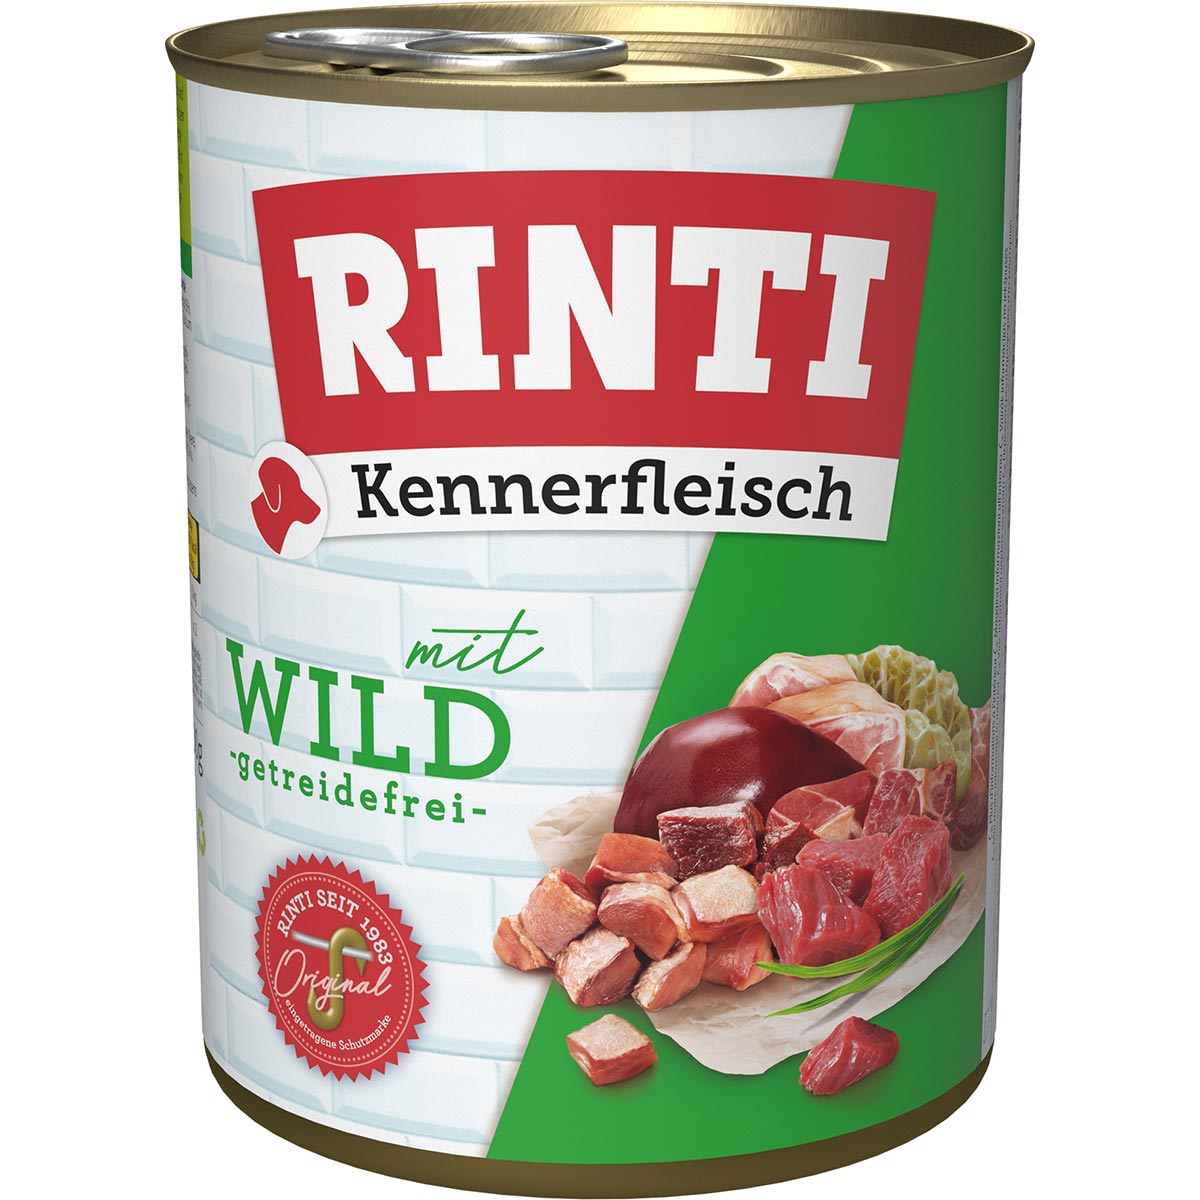 Rinti Kennerfleisch Wild 24x800g von Rinti